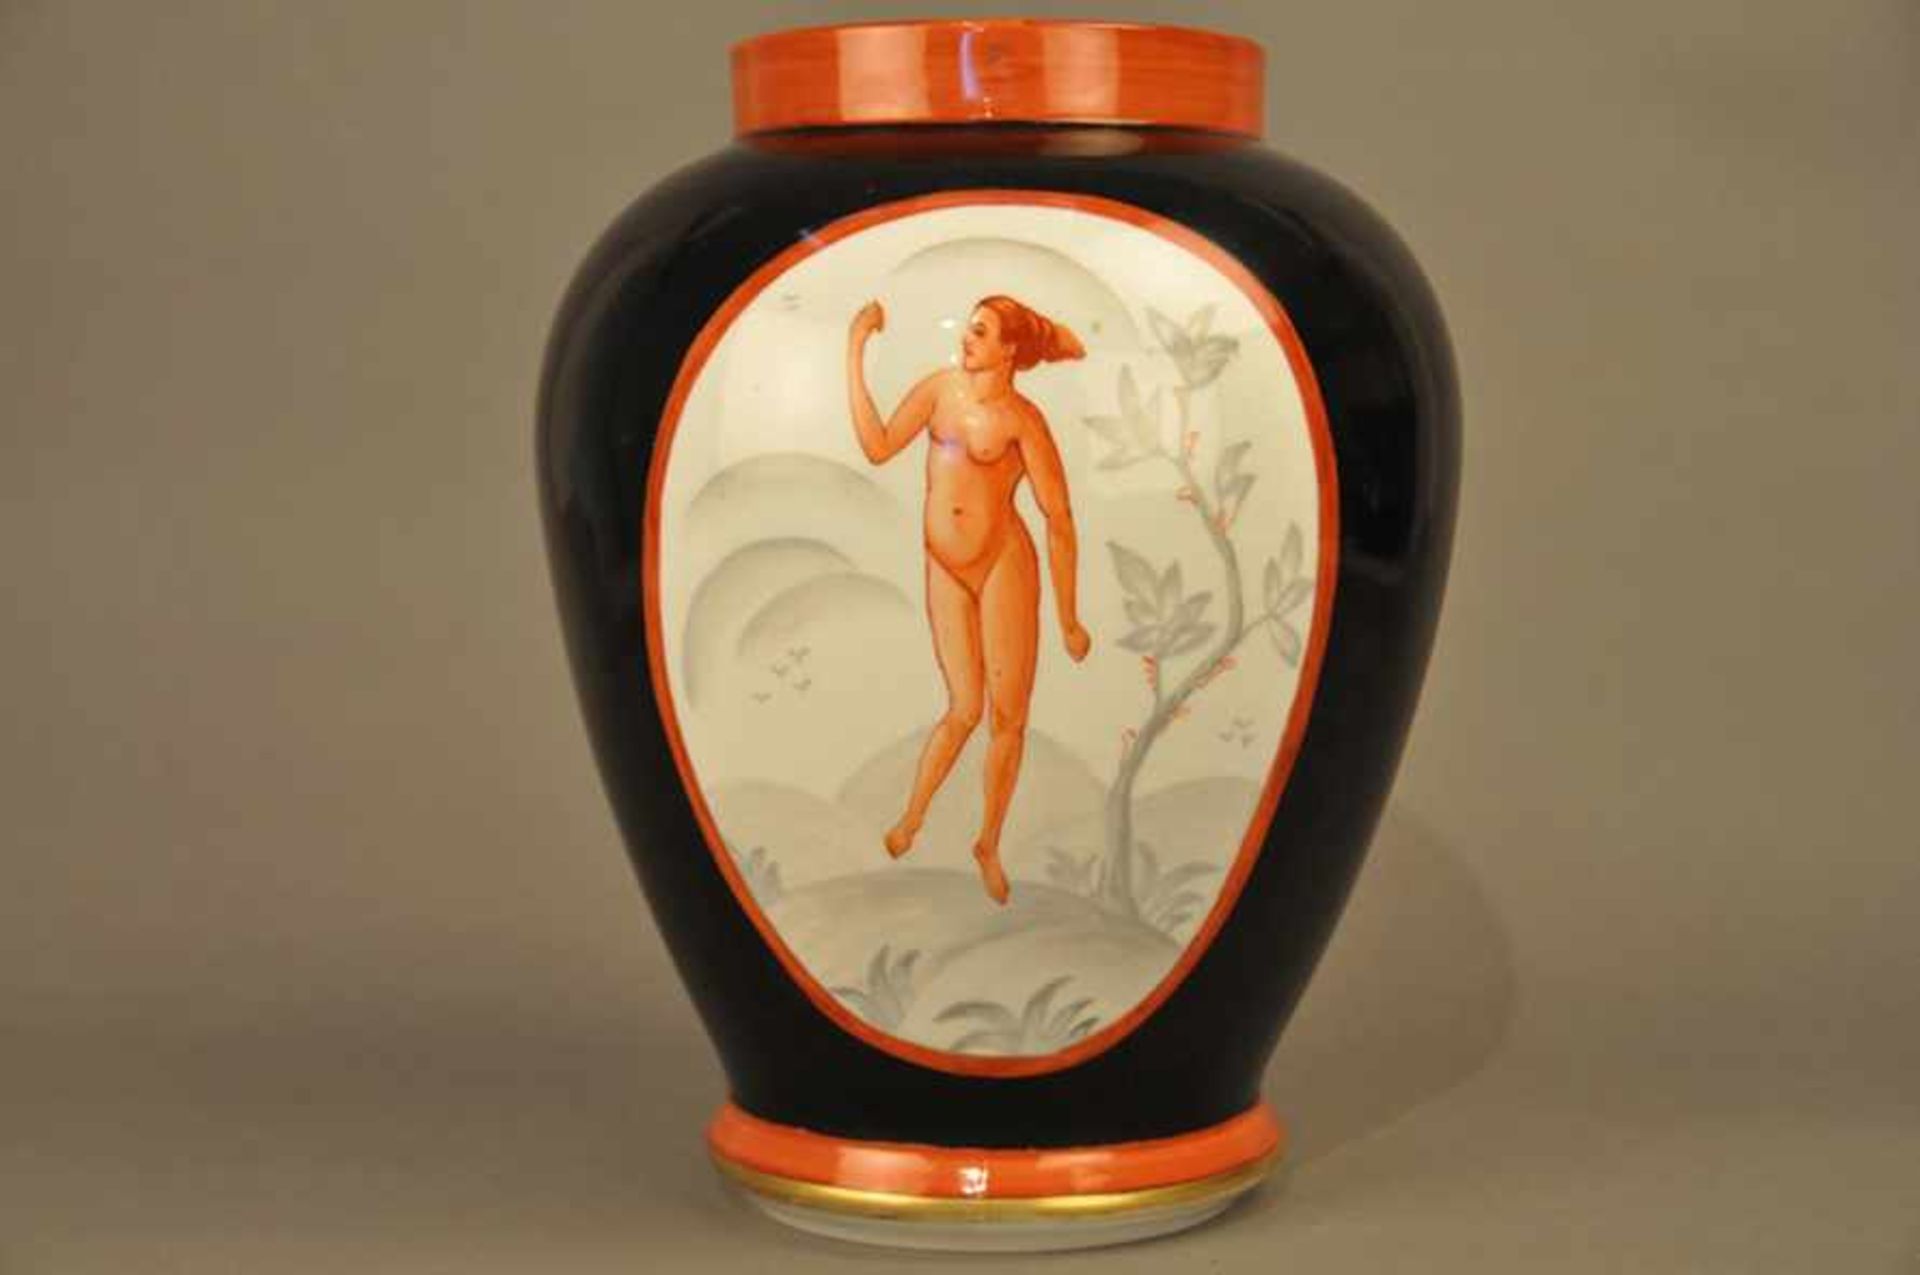 Bauchige Vase, Jugendstil / Art Deco.Schwarzer Fond, 2 Kartuschen mit weiblichen Akten in Rot, - Image 3 of 7